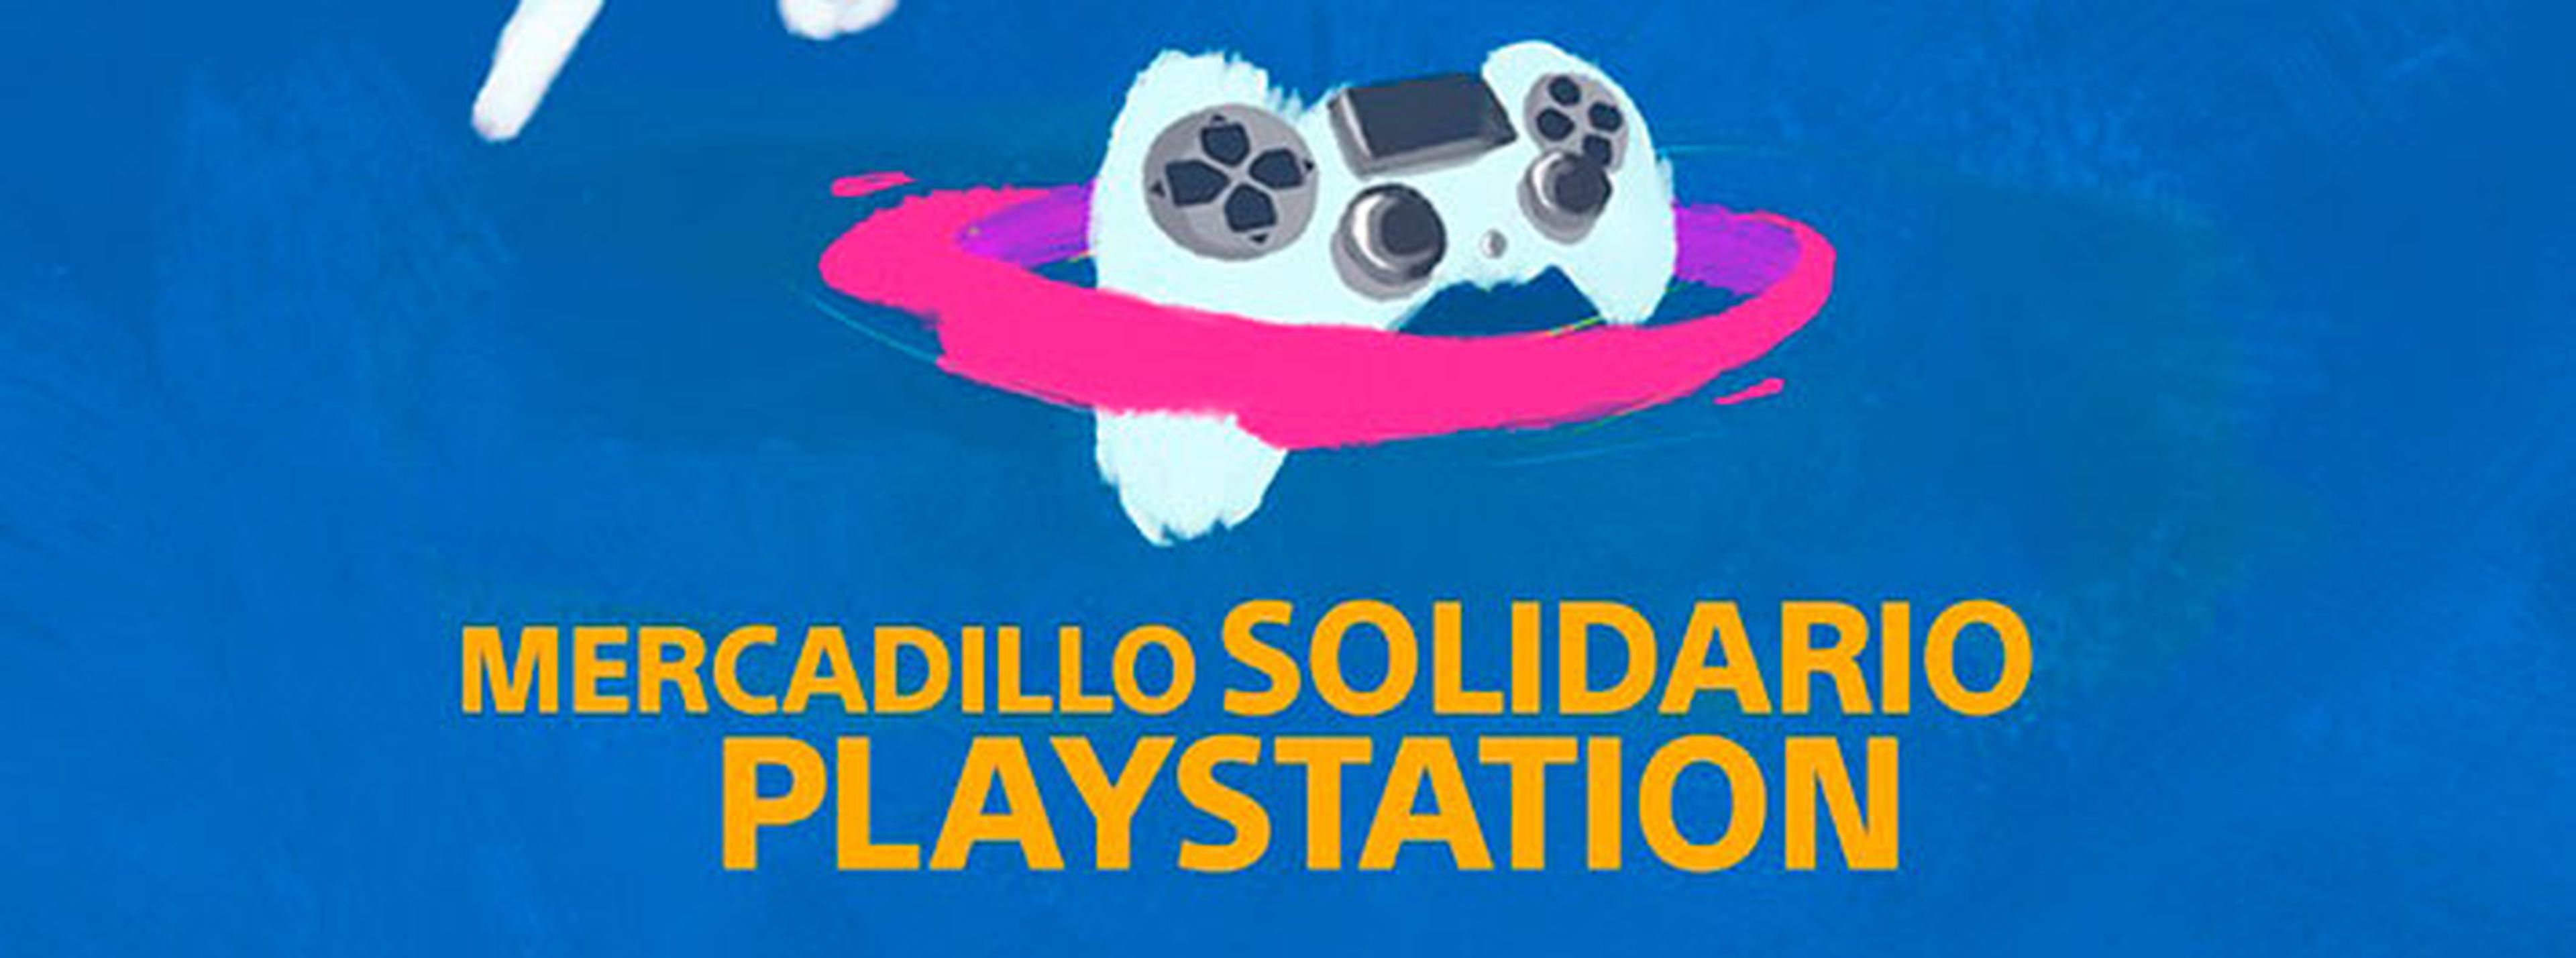 Mercadillo Solidario PlayStation